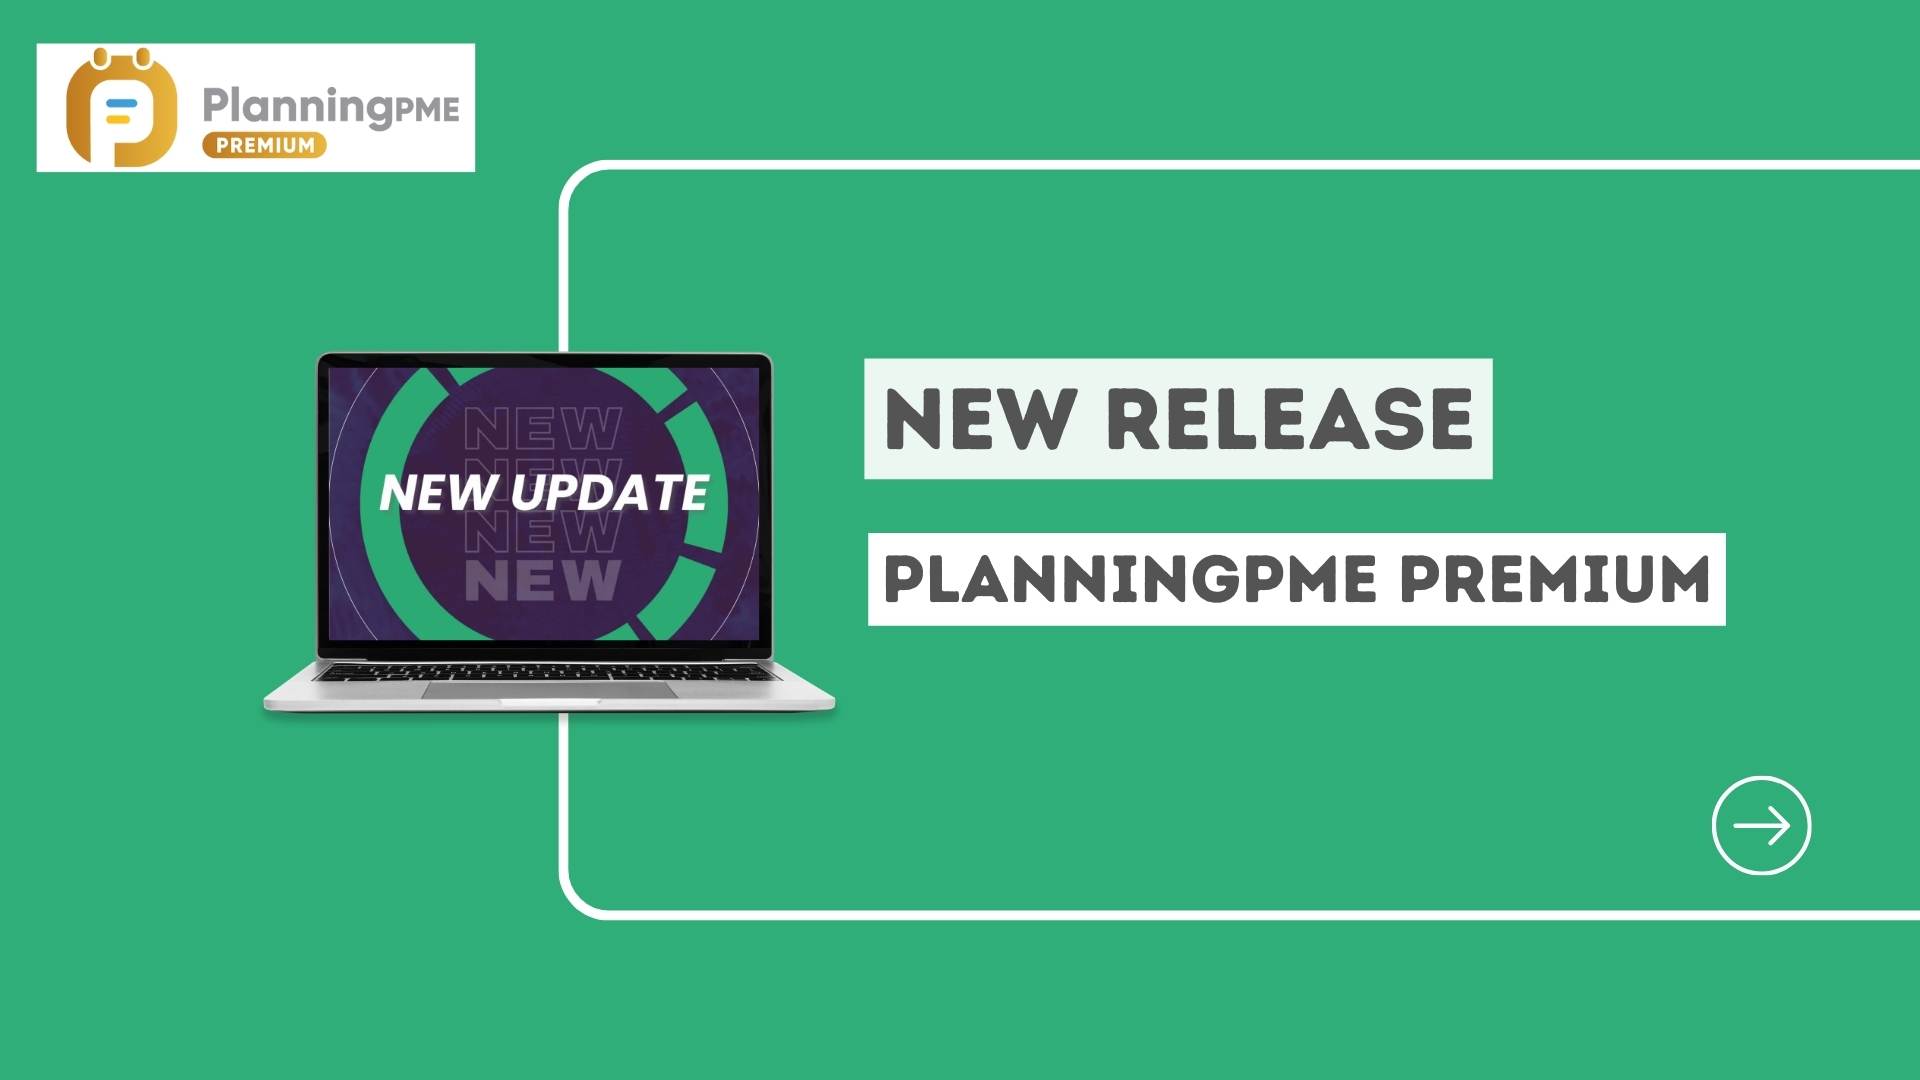 Presentation of PlanningPME Premium